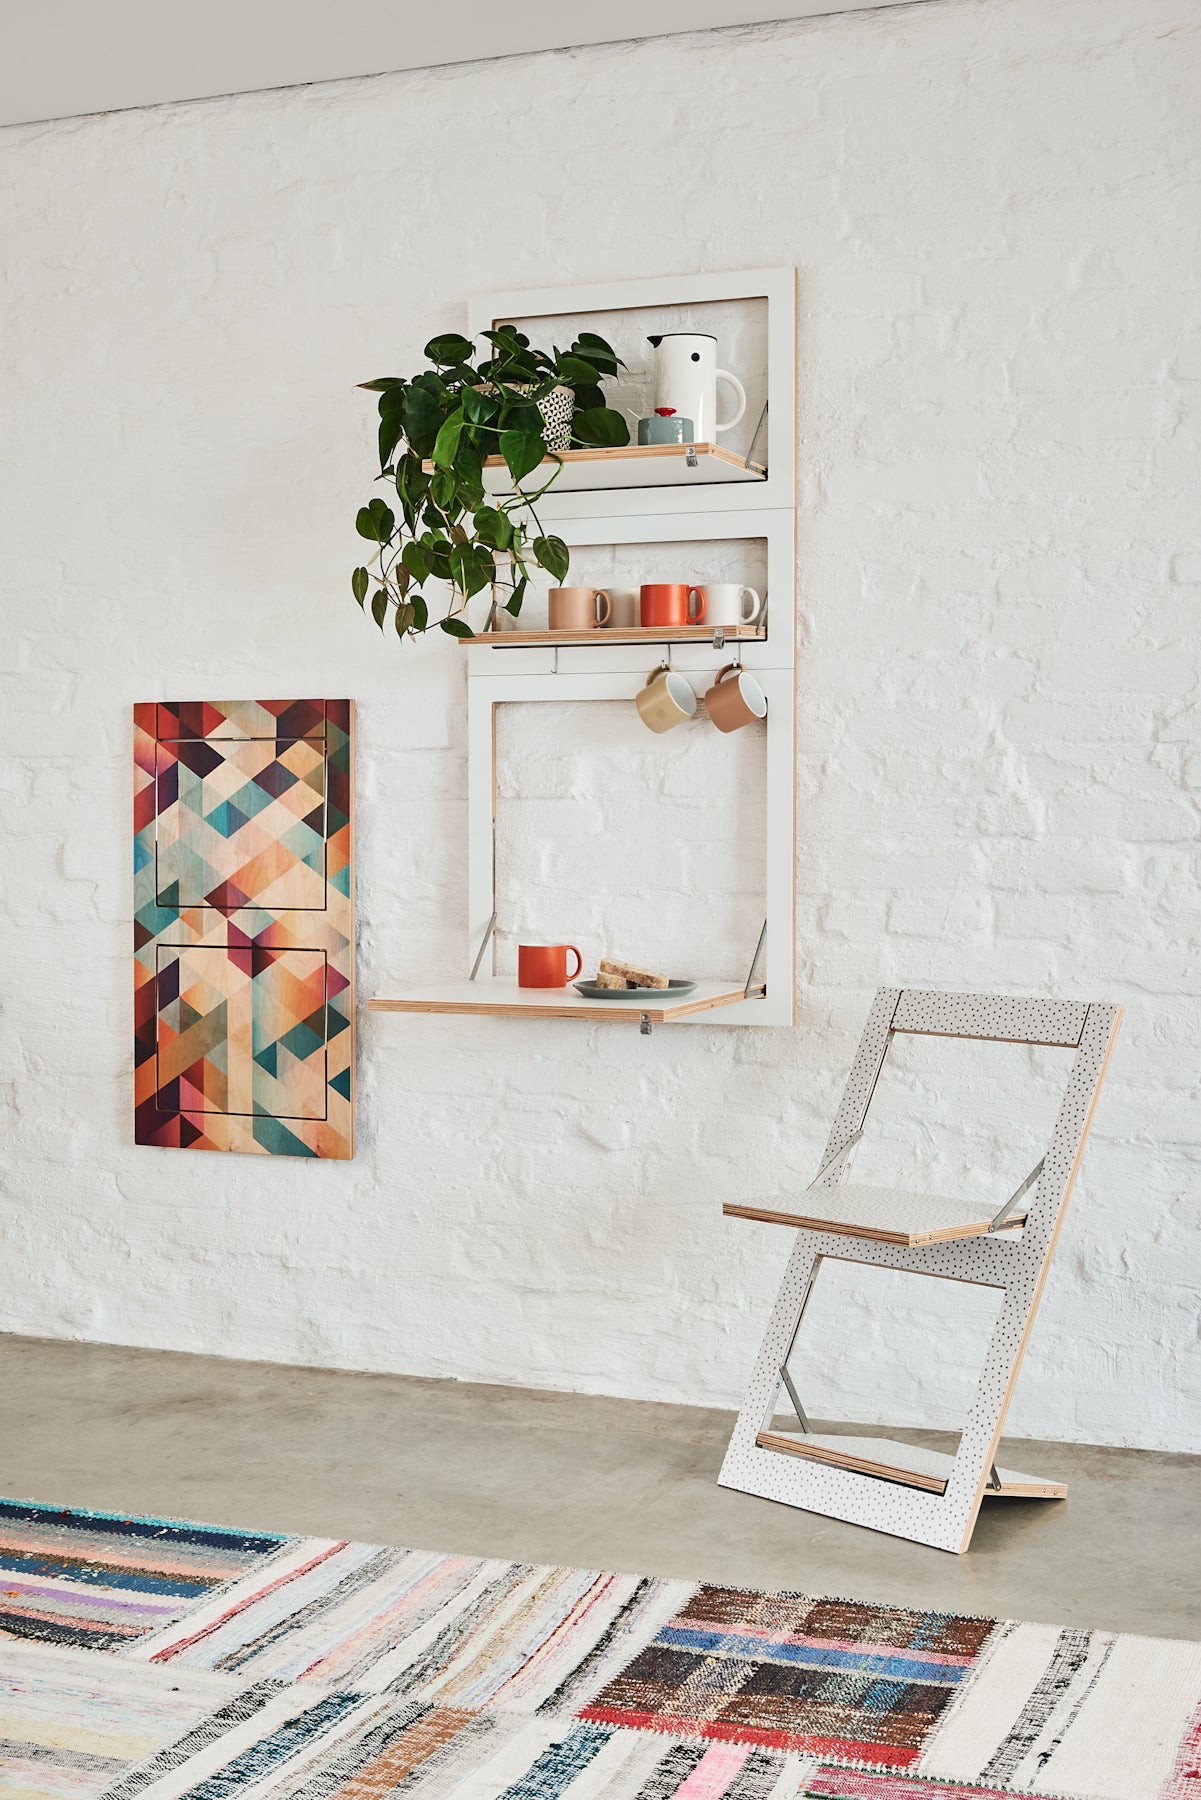 Fläpps Folding Chair – Criss Cross Red